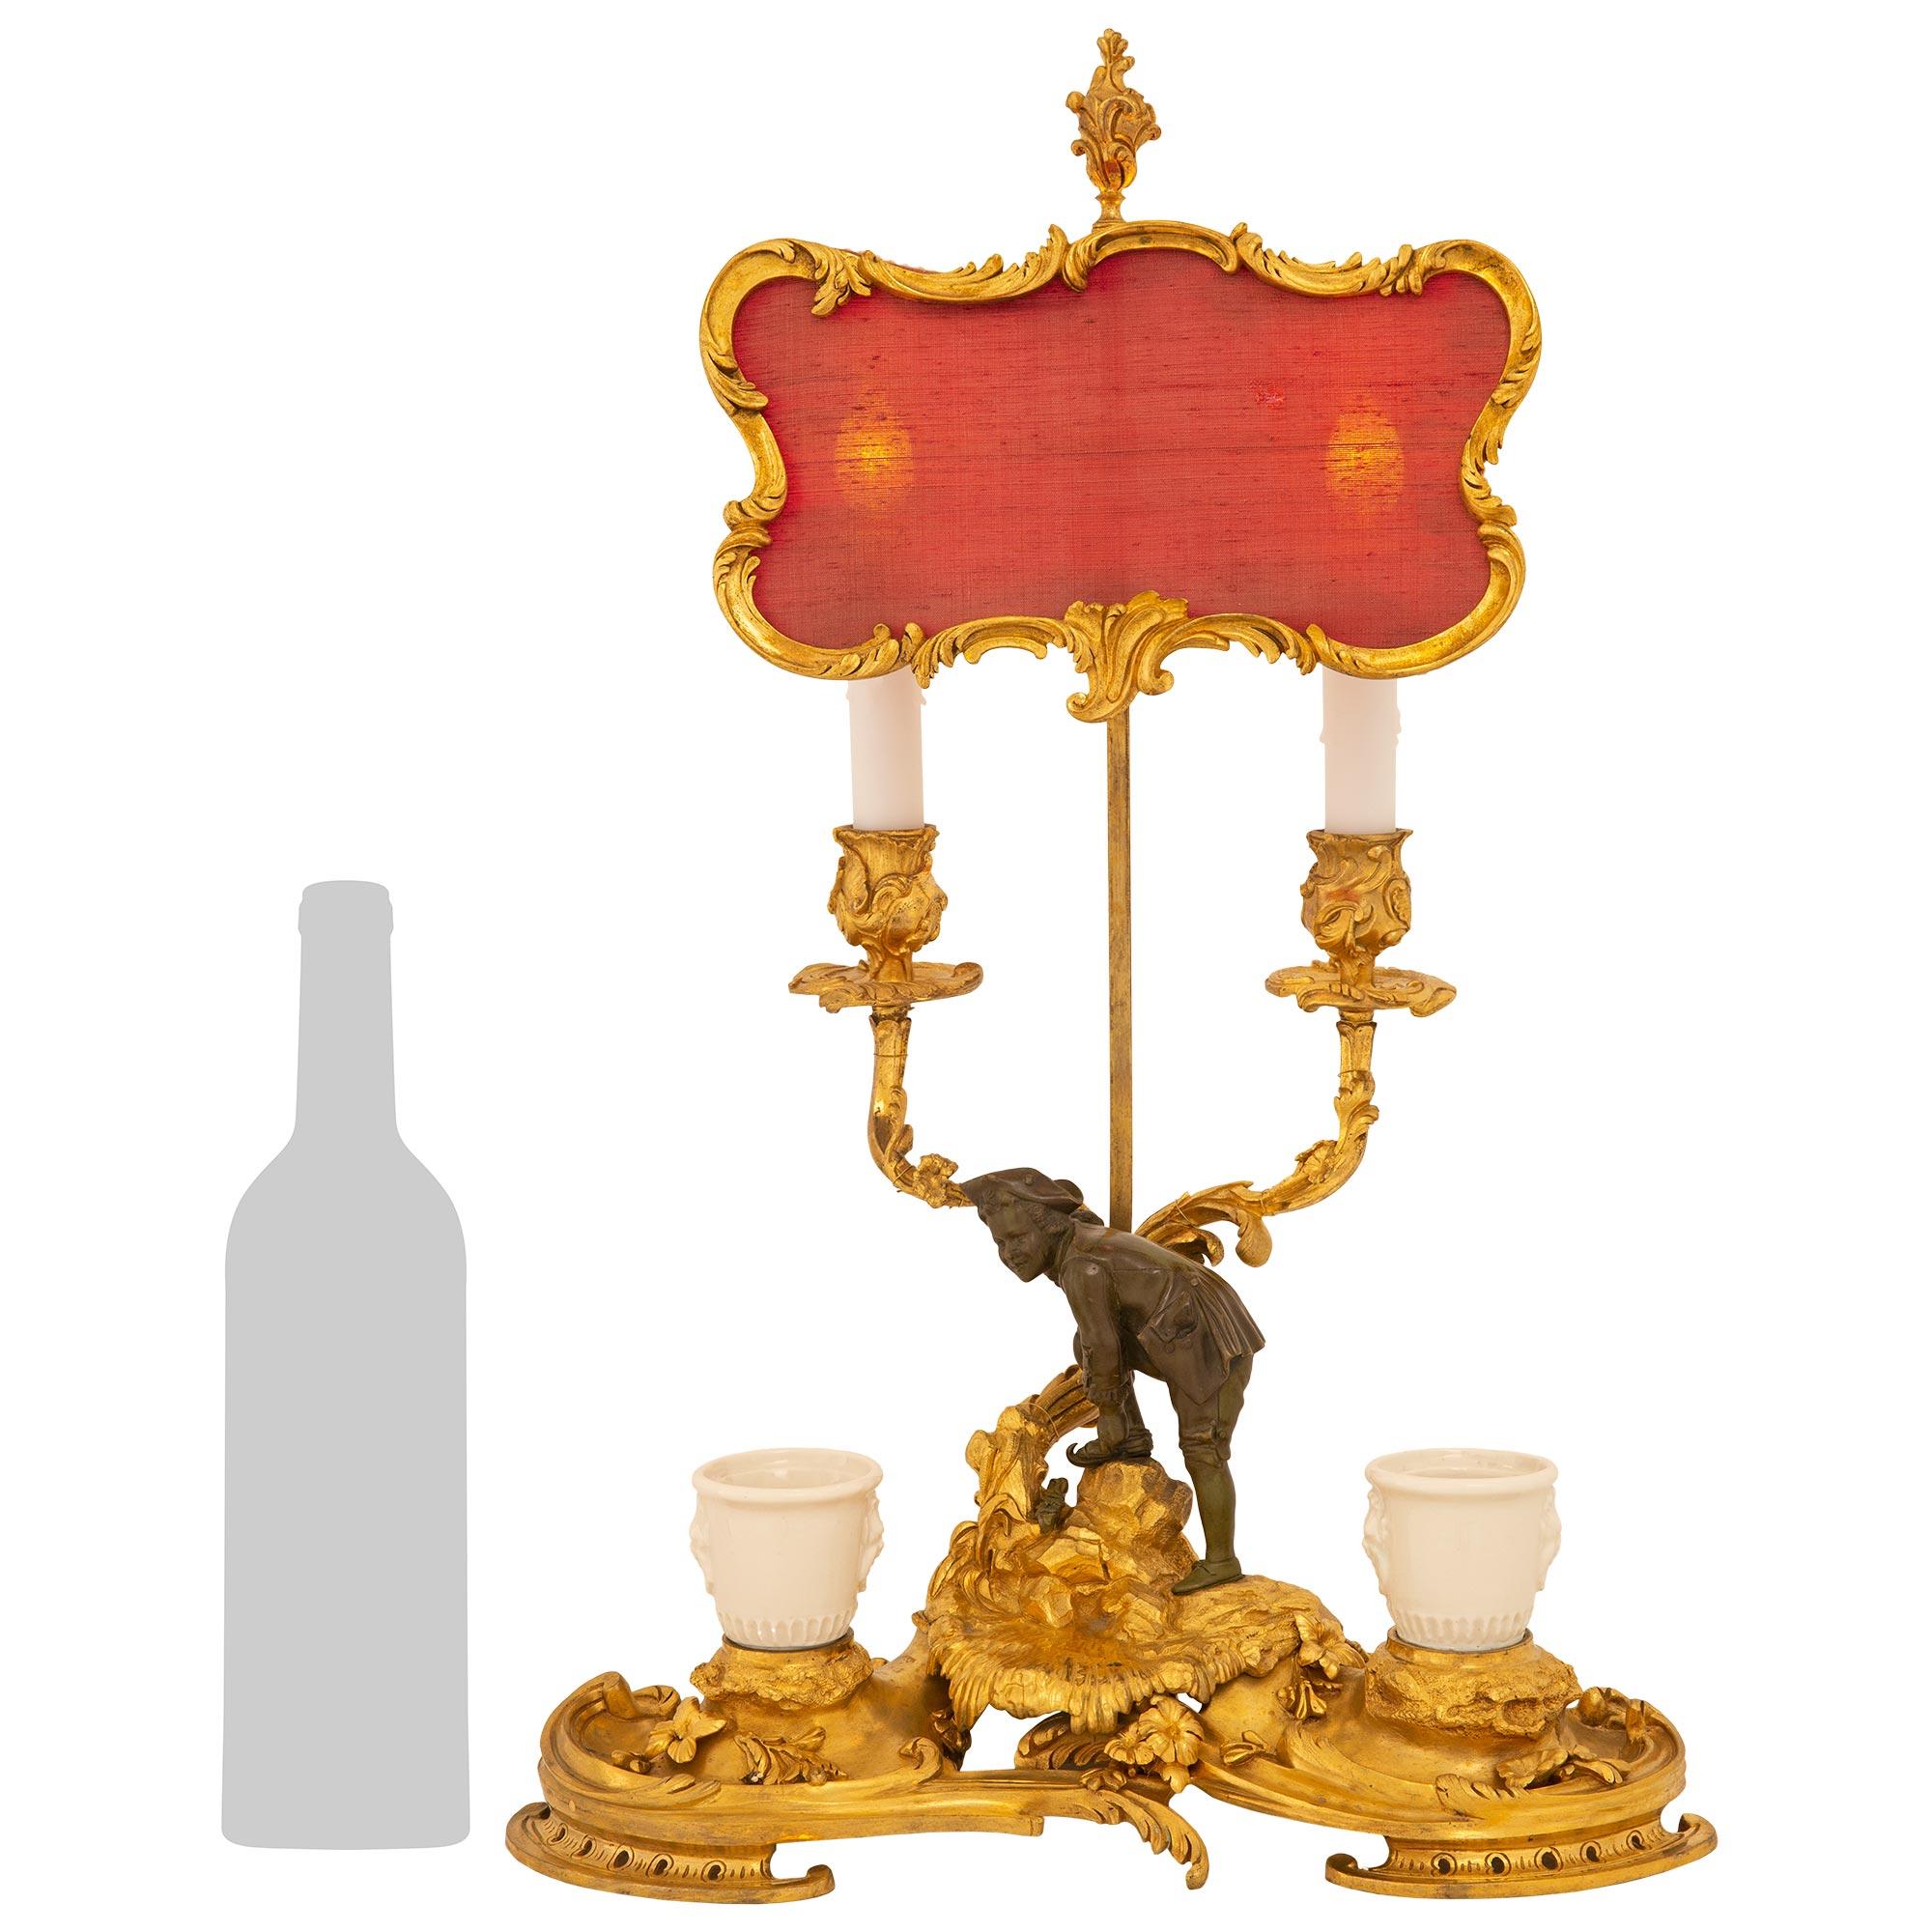 Unique et élégante lampe candélabre en bronze doré de style Louis XV du milieu du XIXe siècle, avec encriers et écran réglable. La lampe est surmontée d'une base en forme de rein avec une finition satinée et brunie qui présente les encriers